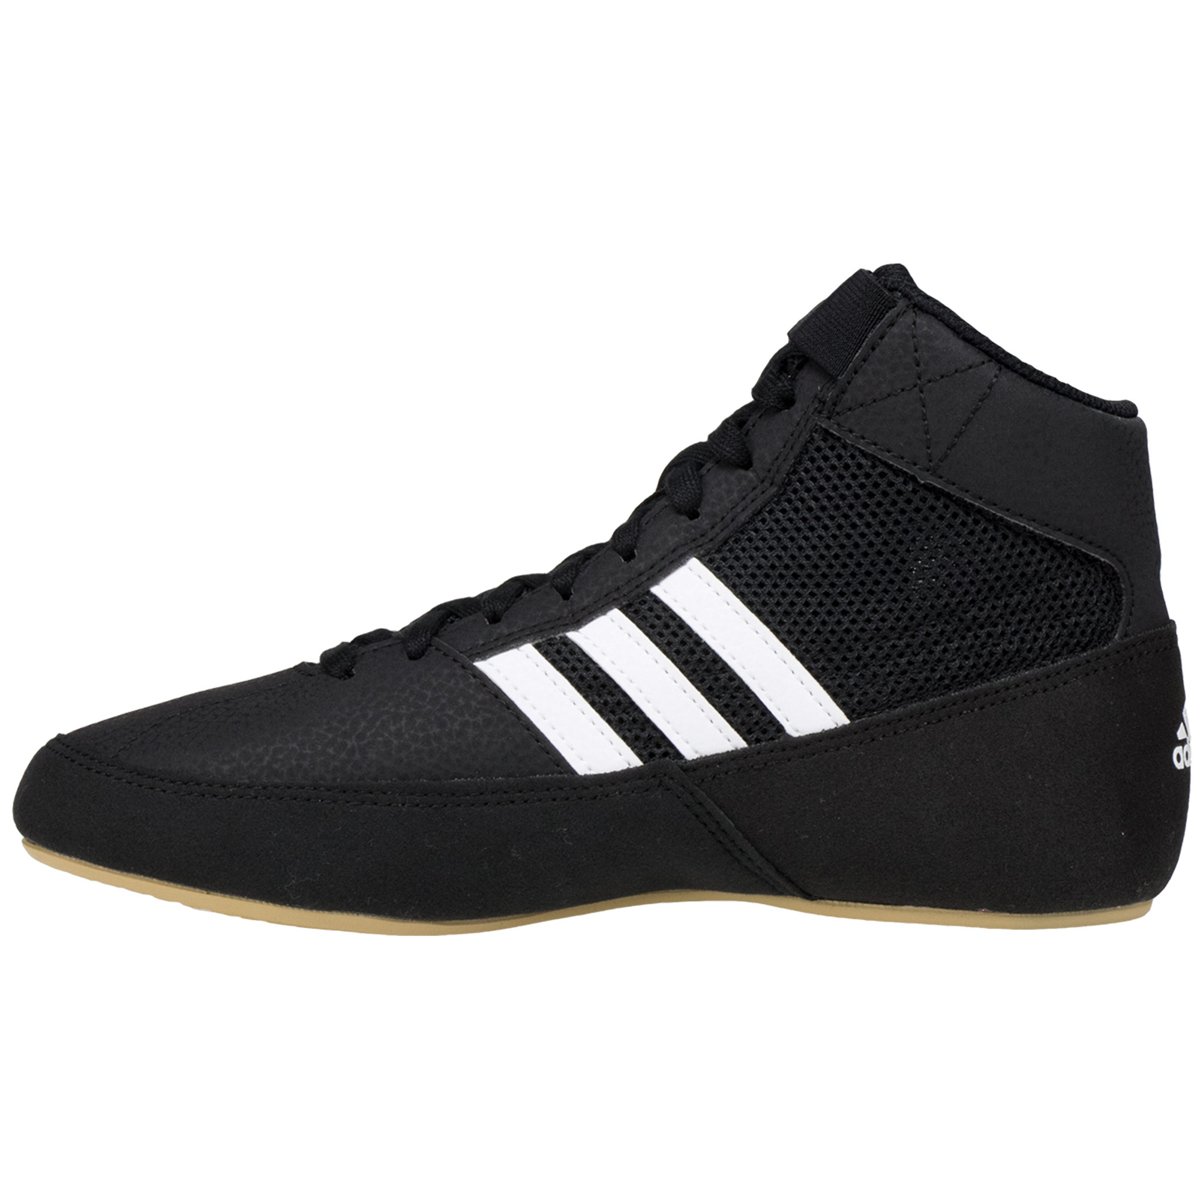 adidas Men's HVC Wrestling Shoe, Black/White, 9.5